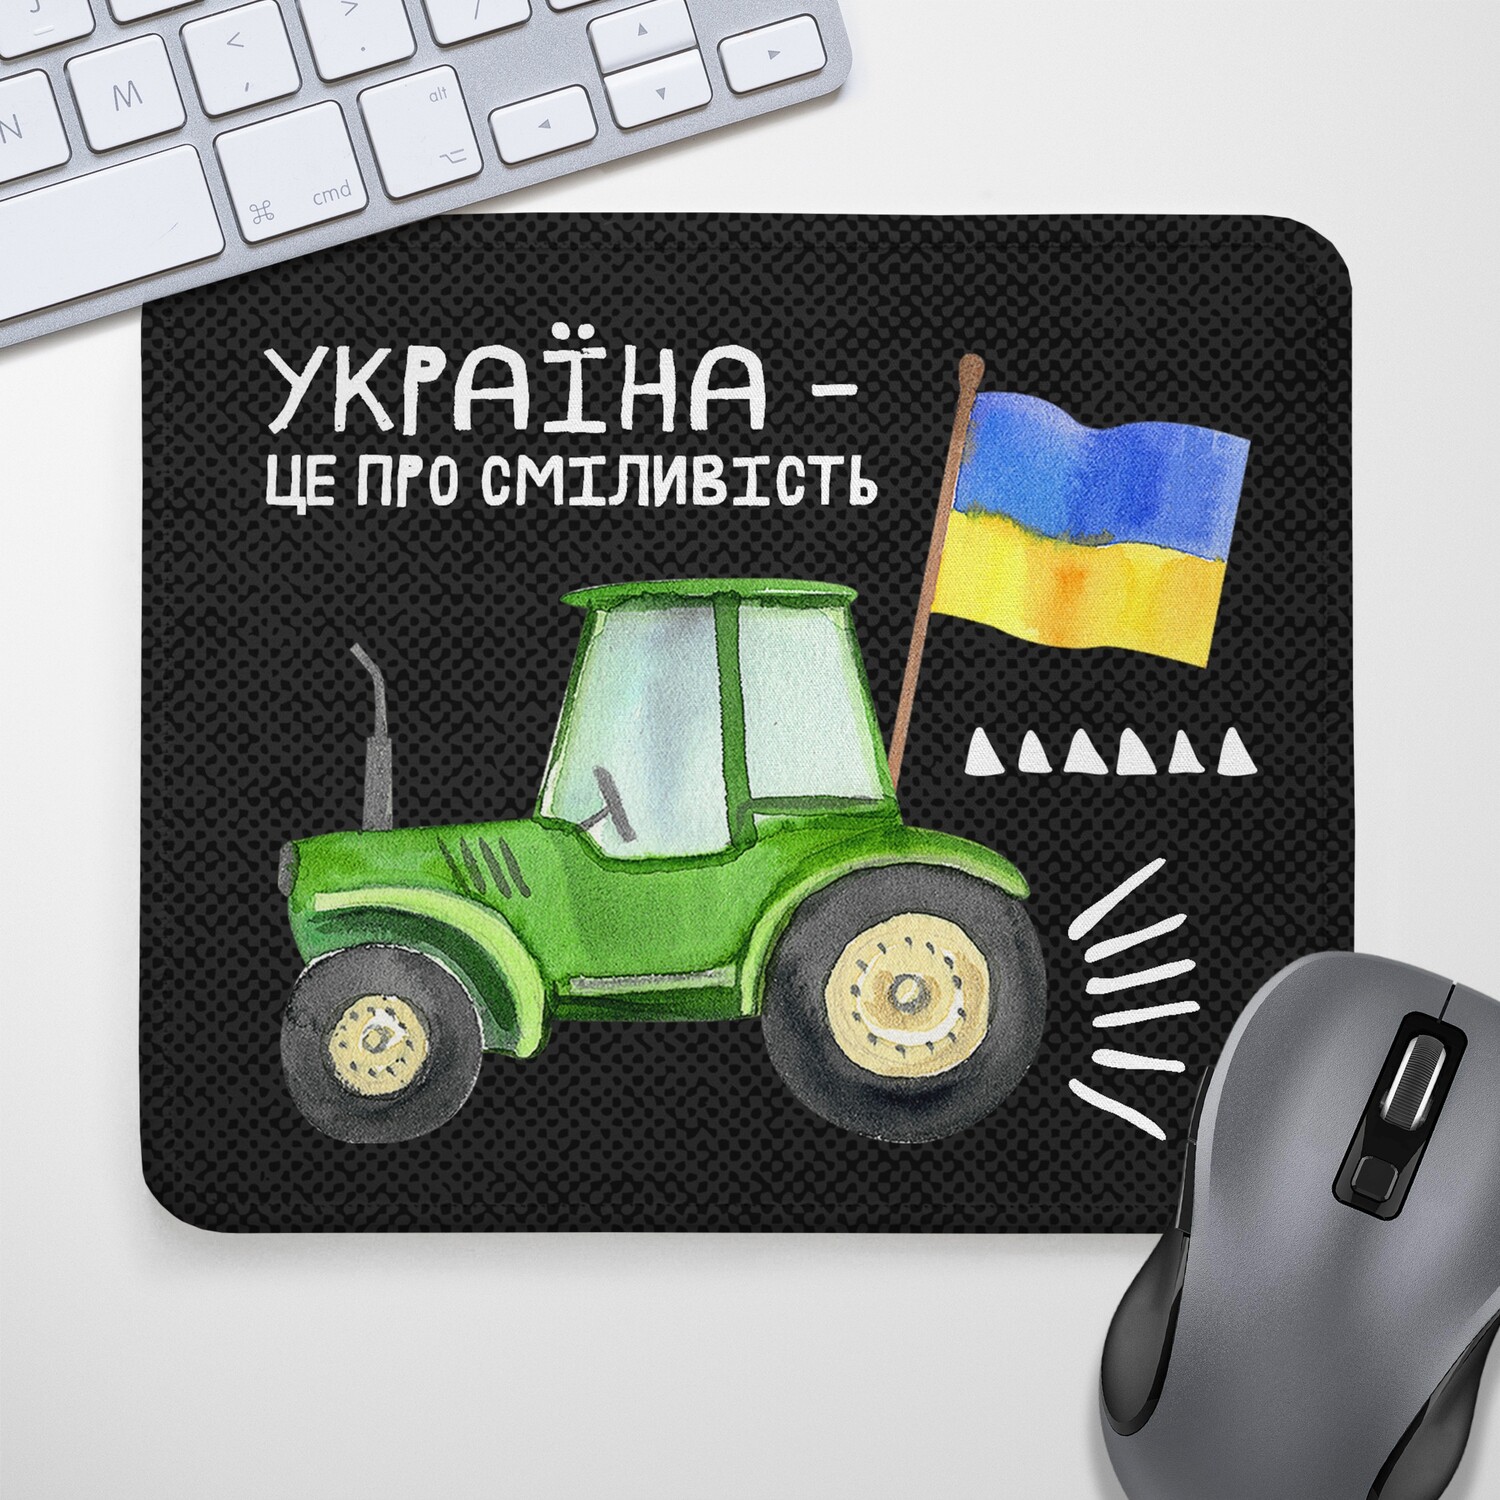 Коврик для мышки Украина - это про смелость